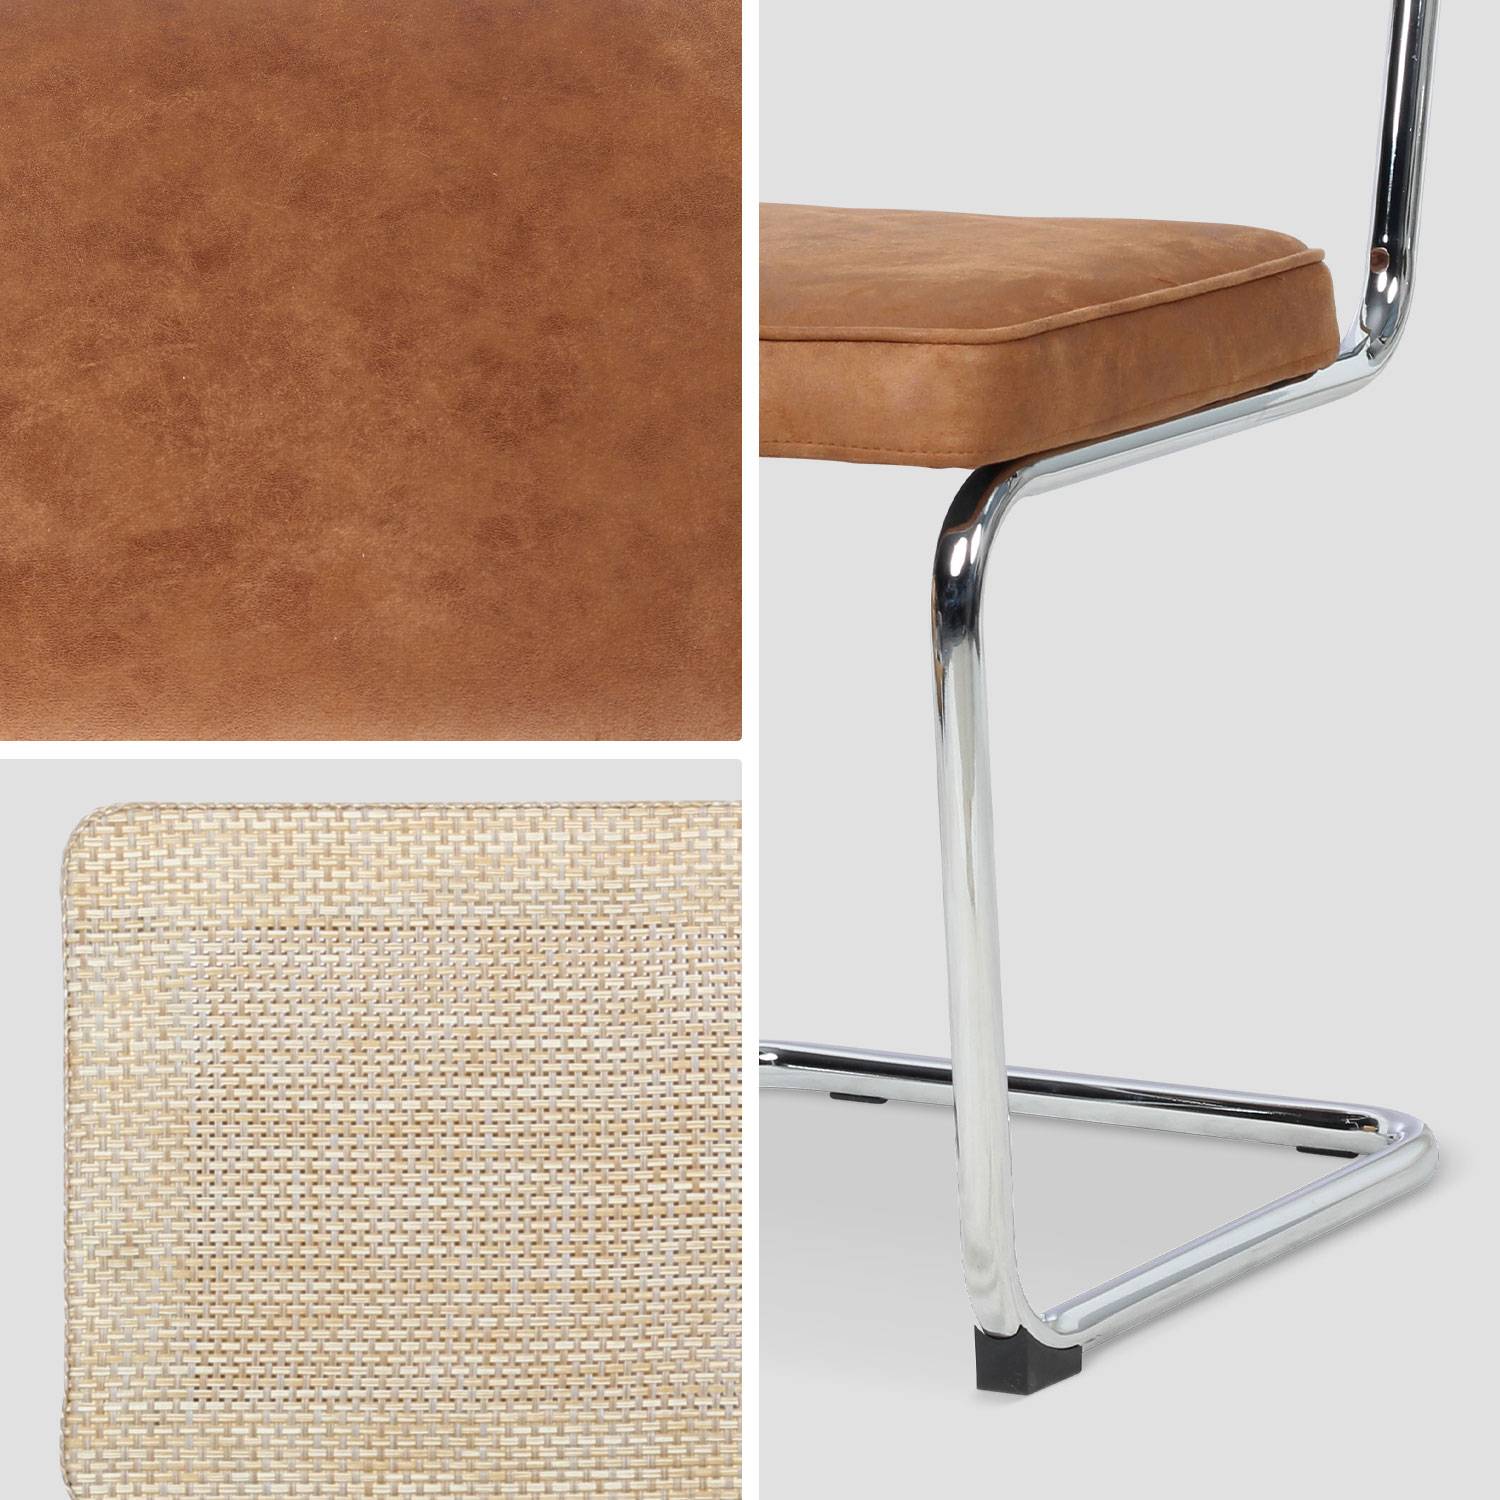 2 sillas cantilever - Maja - tela marrón claro y resina efecto ratán, 46 x 54,5 x 84,5cm   Photo6